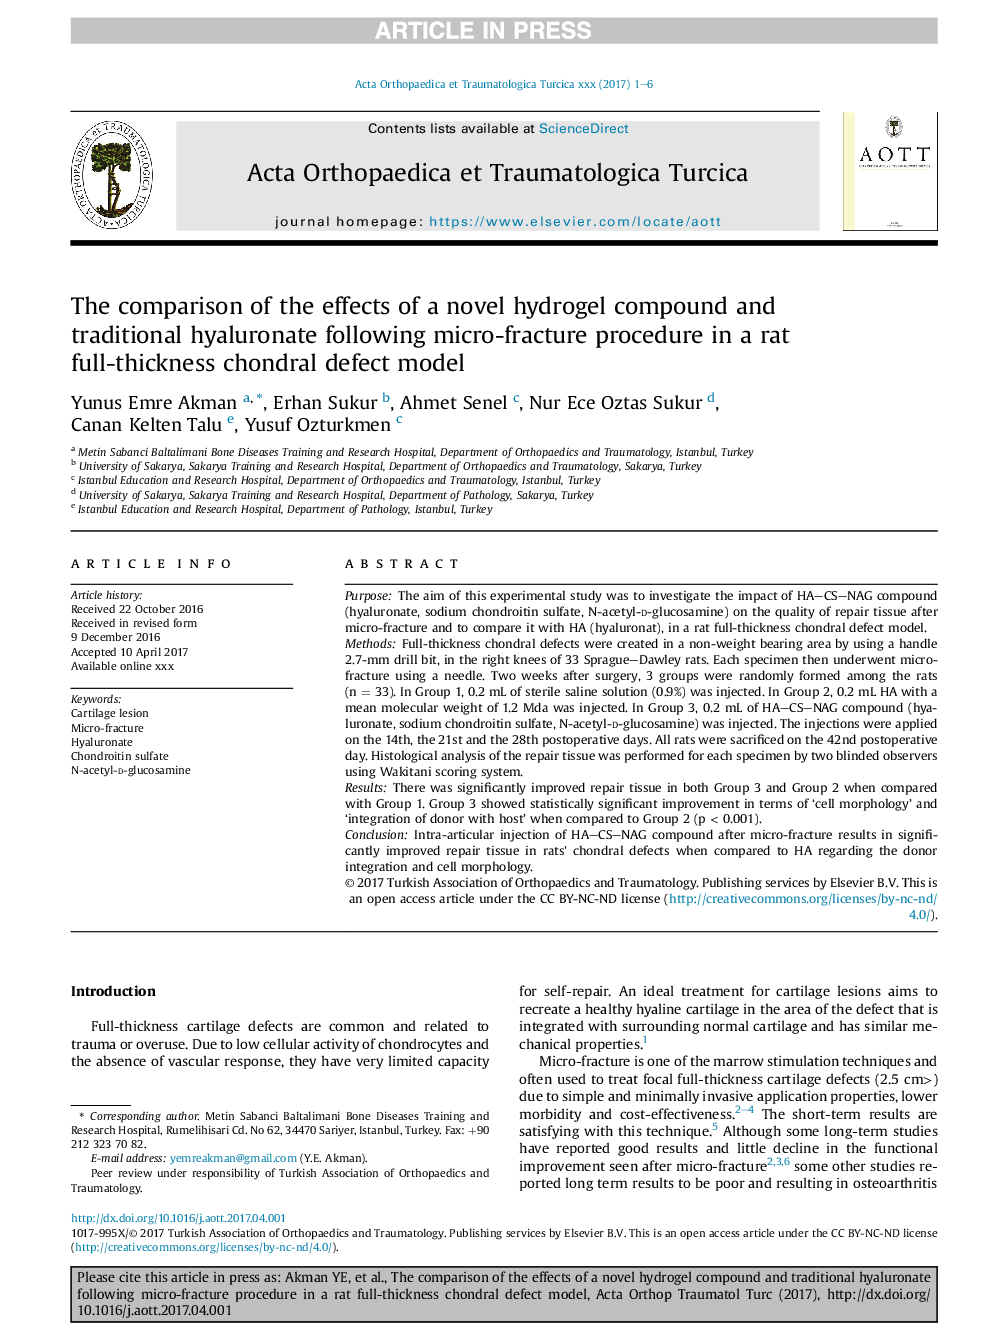 مقایسه اثرات یک ترکیب هیدروژل جدید و هیالورونات سنتی با استفاده از روش شکستگی میکرو در یک مدل نقص کلسترول ضخیم موش صحرایی 